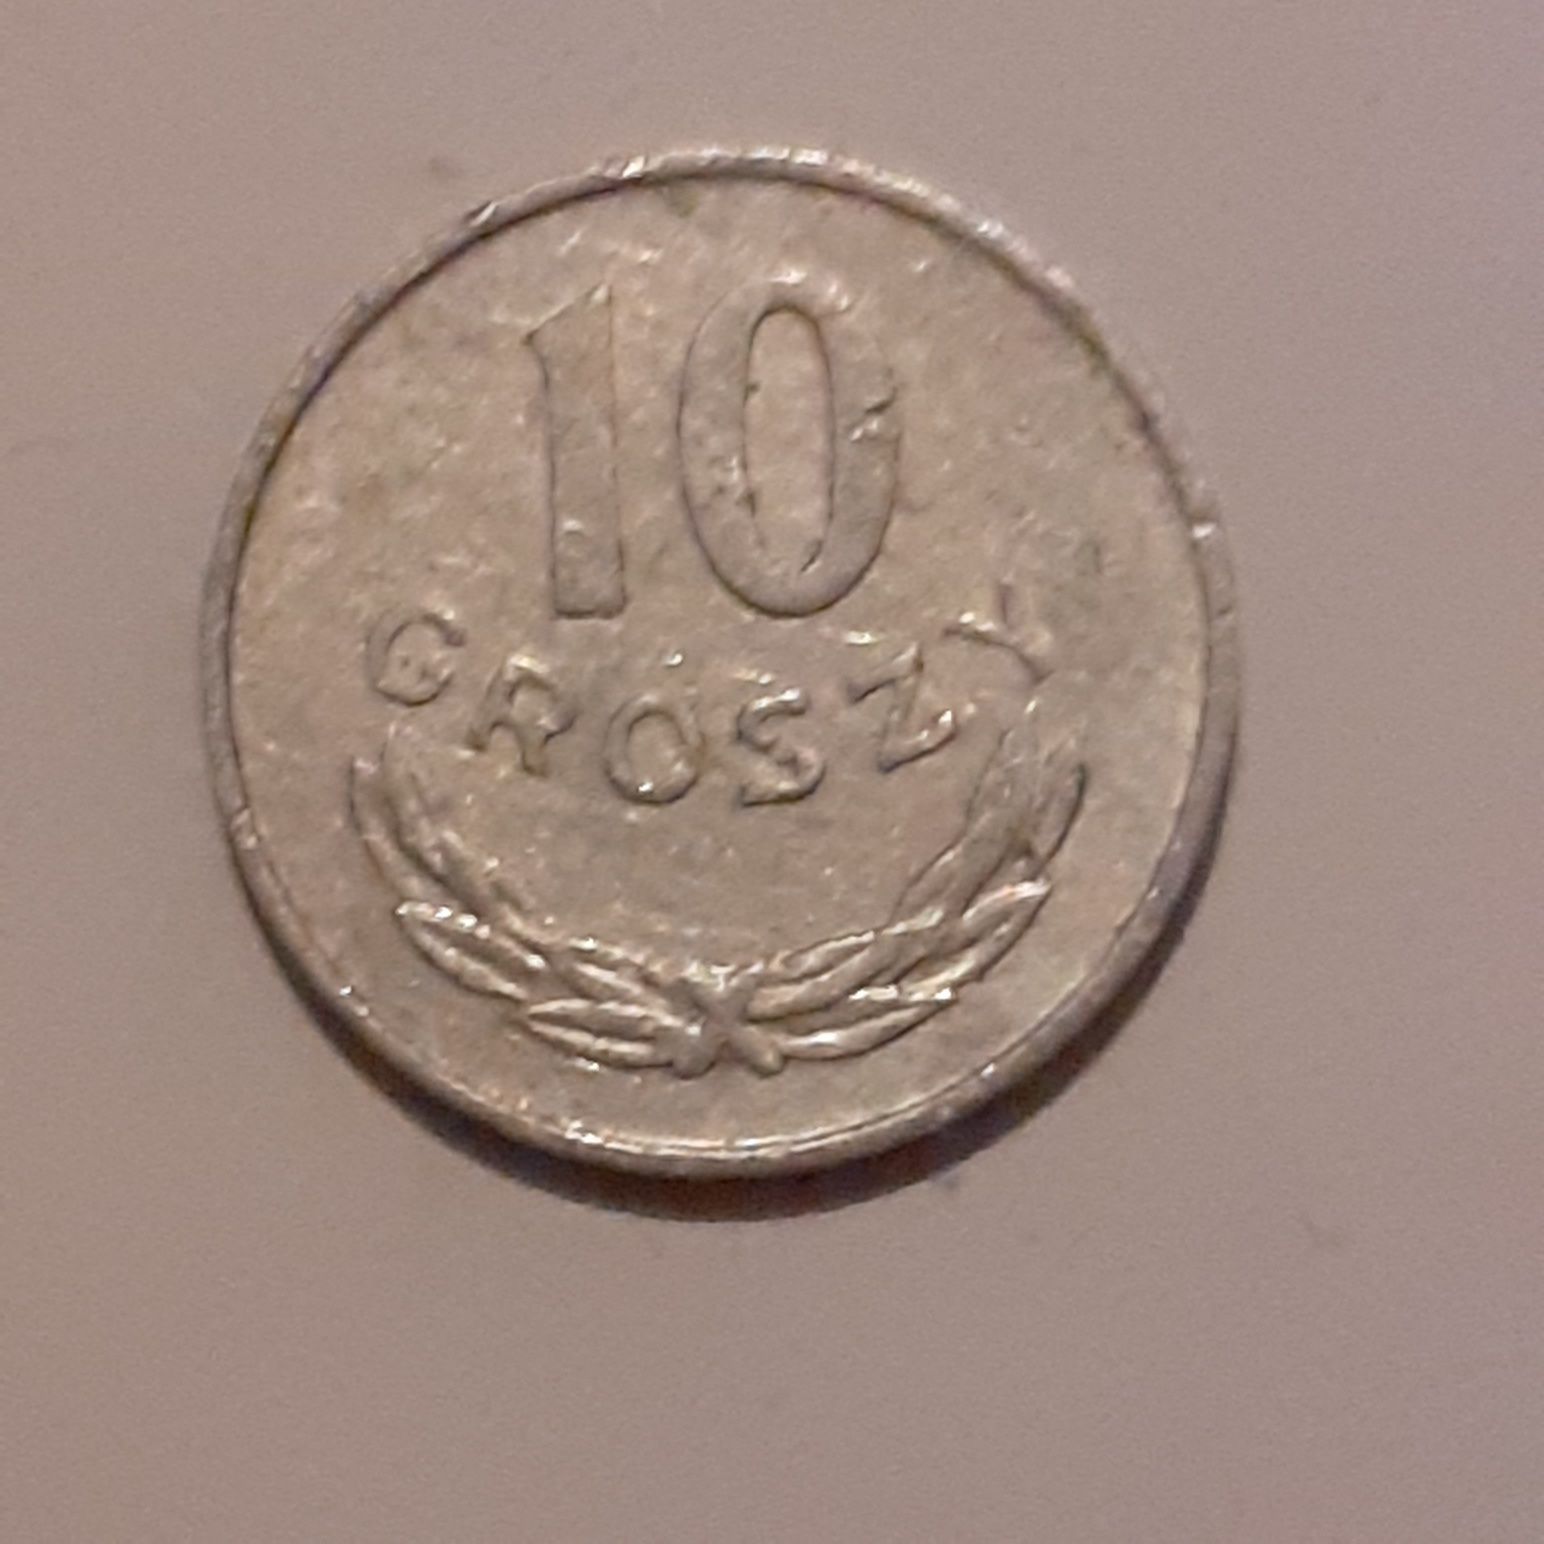 Sprzedam    monetę o nominale 10gr   z1977roku.